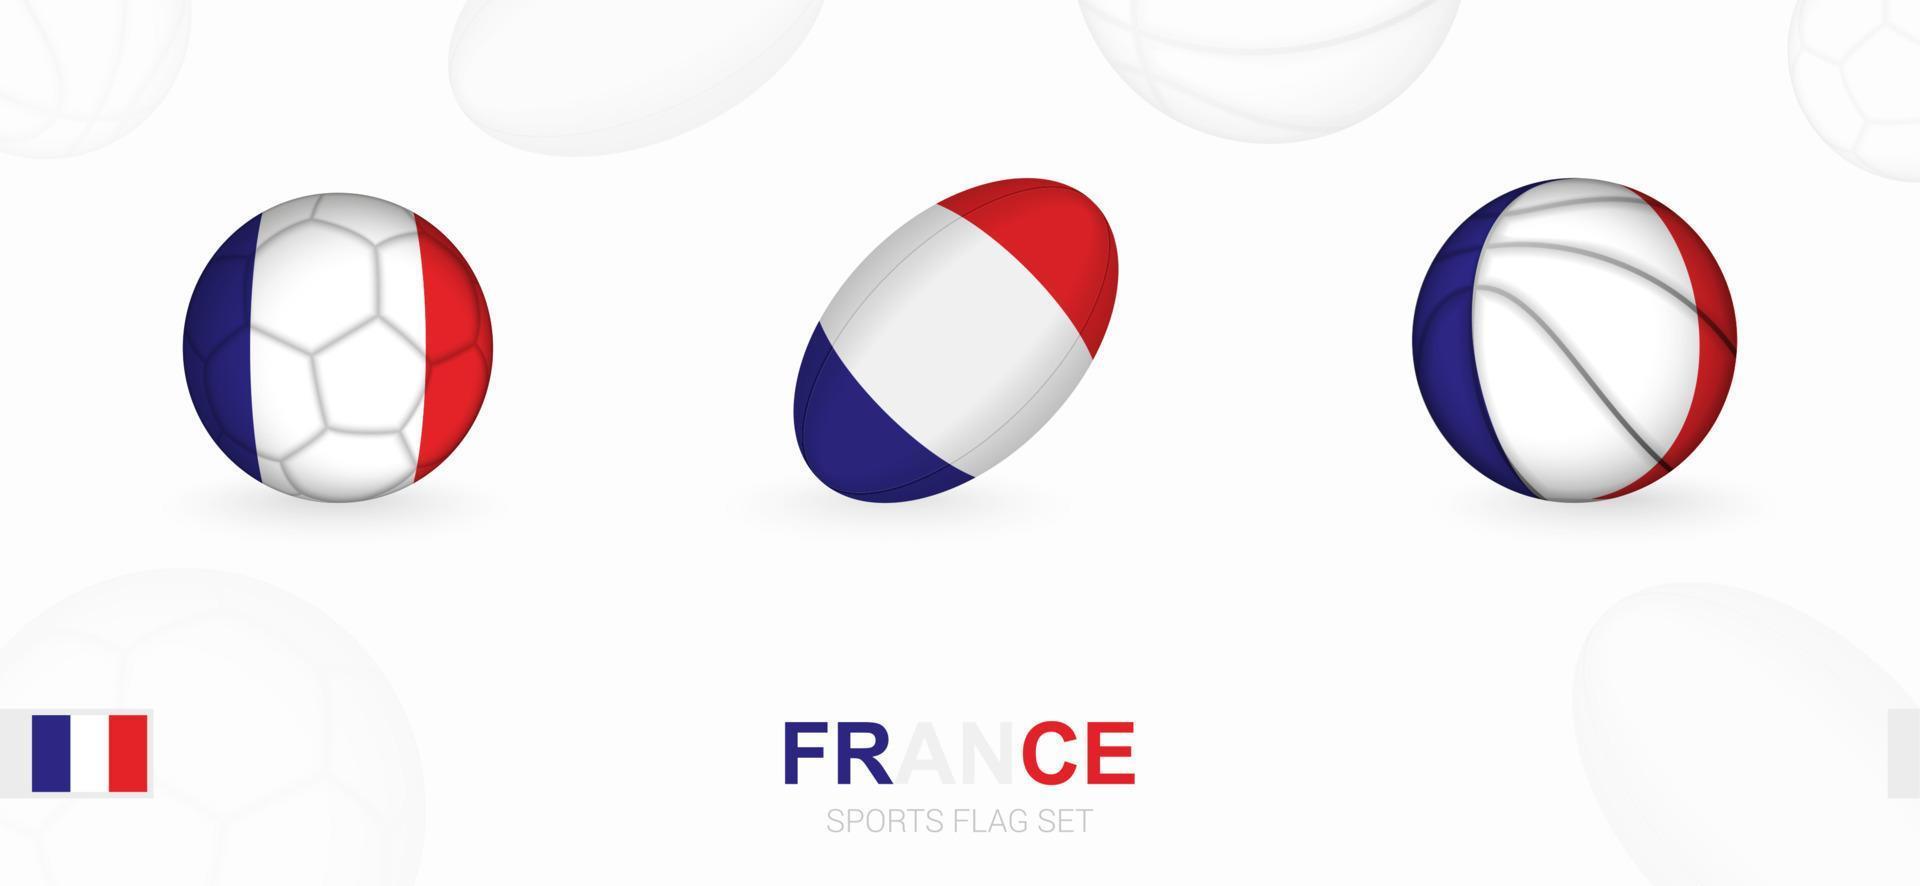 Deportes íconos para fútbol, rugby y baloncesto con el bandera de Francia. vector